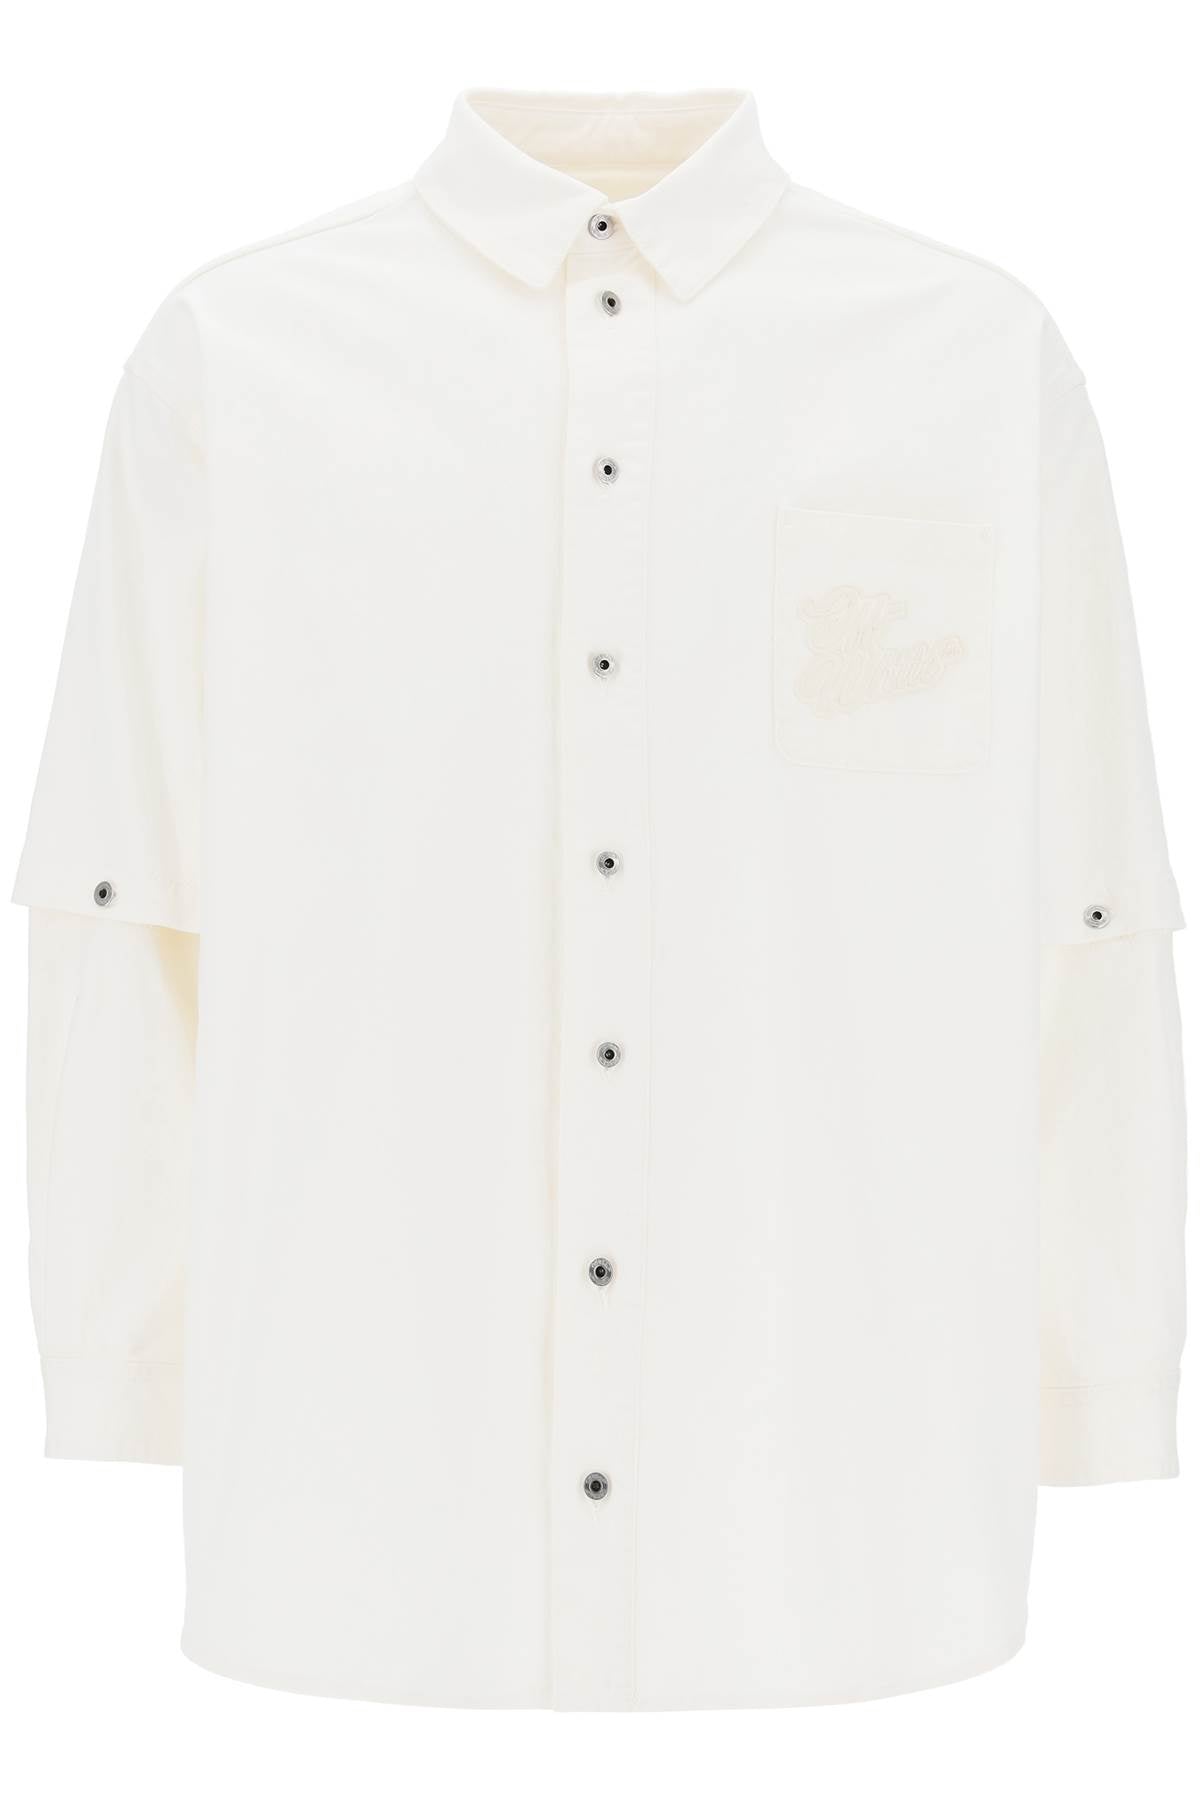 Áo khoác lớn màu trắng với logo những năm 90